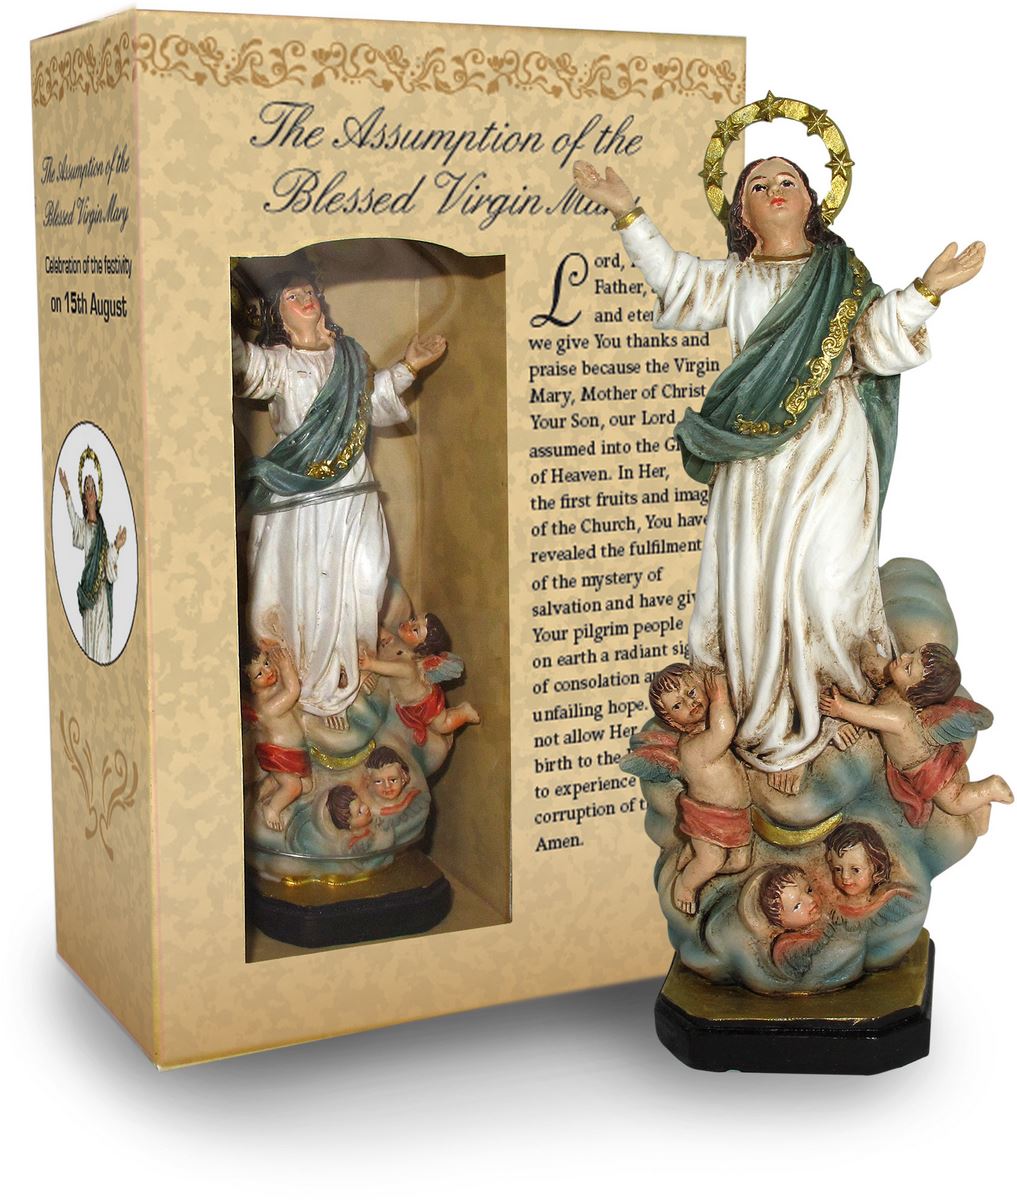 ferrari & arrighetti statua di madonna assunta in cielo da 12 cm in confezione regalo con segnalibro, statuetta personaggio religioso con scatola regalo decorativa, testi in inglese